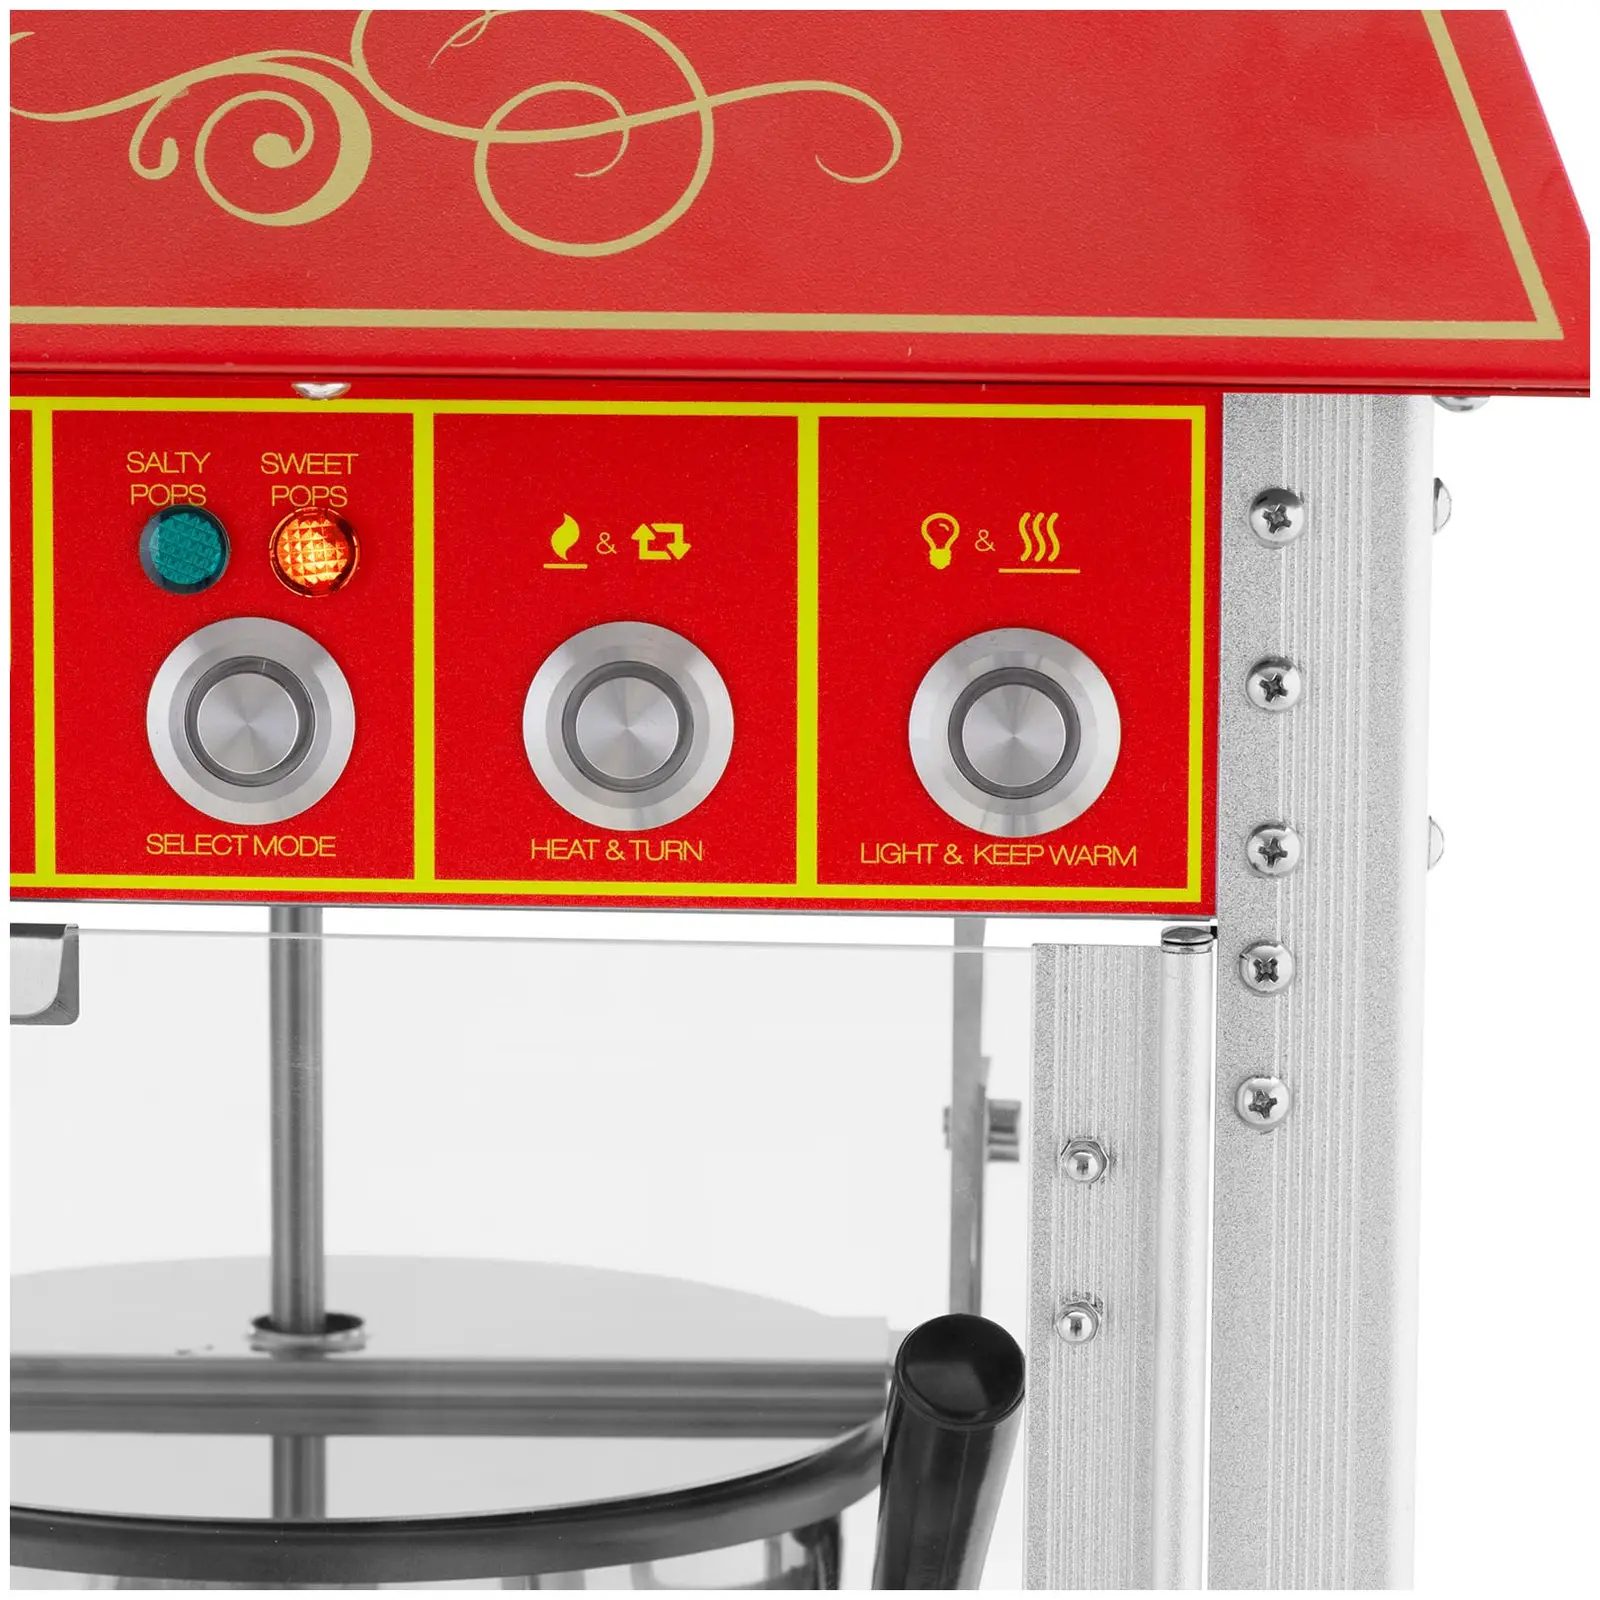 Macchina per popcorn con carretto - Design retró - 150 / 180 °C - Rossa - Royal Catering